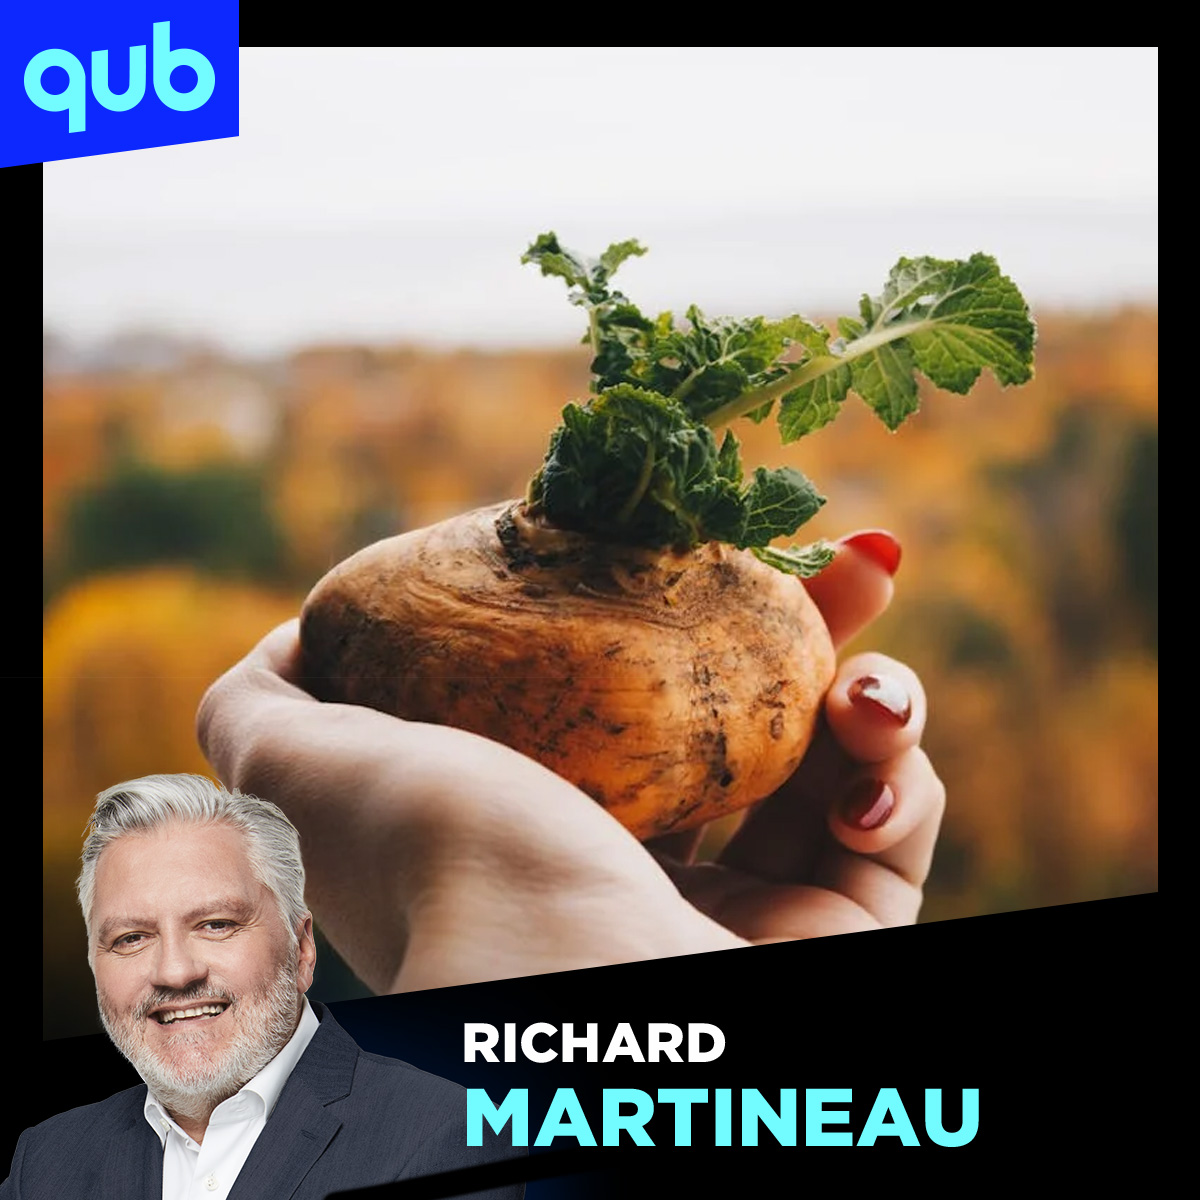 «J’étais une patate» : le passé paresseux de Richard Martineau